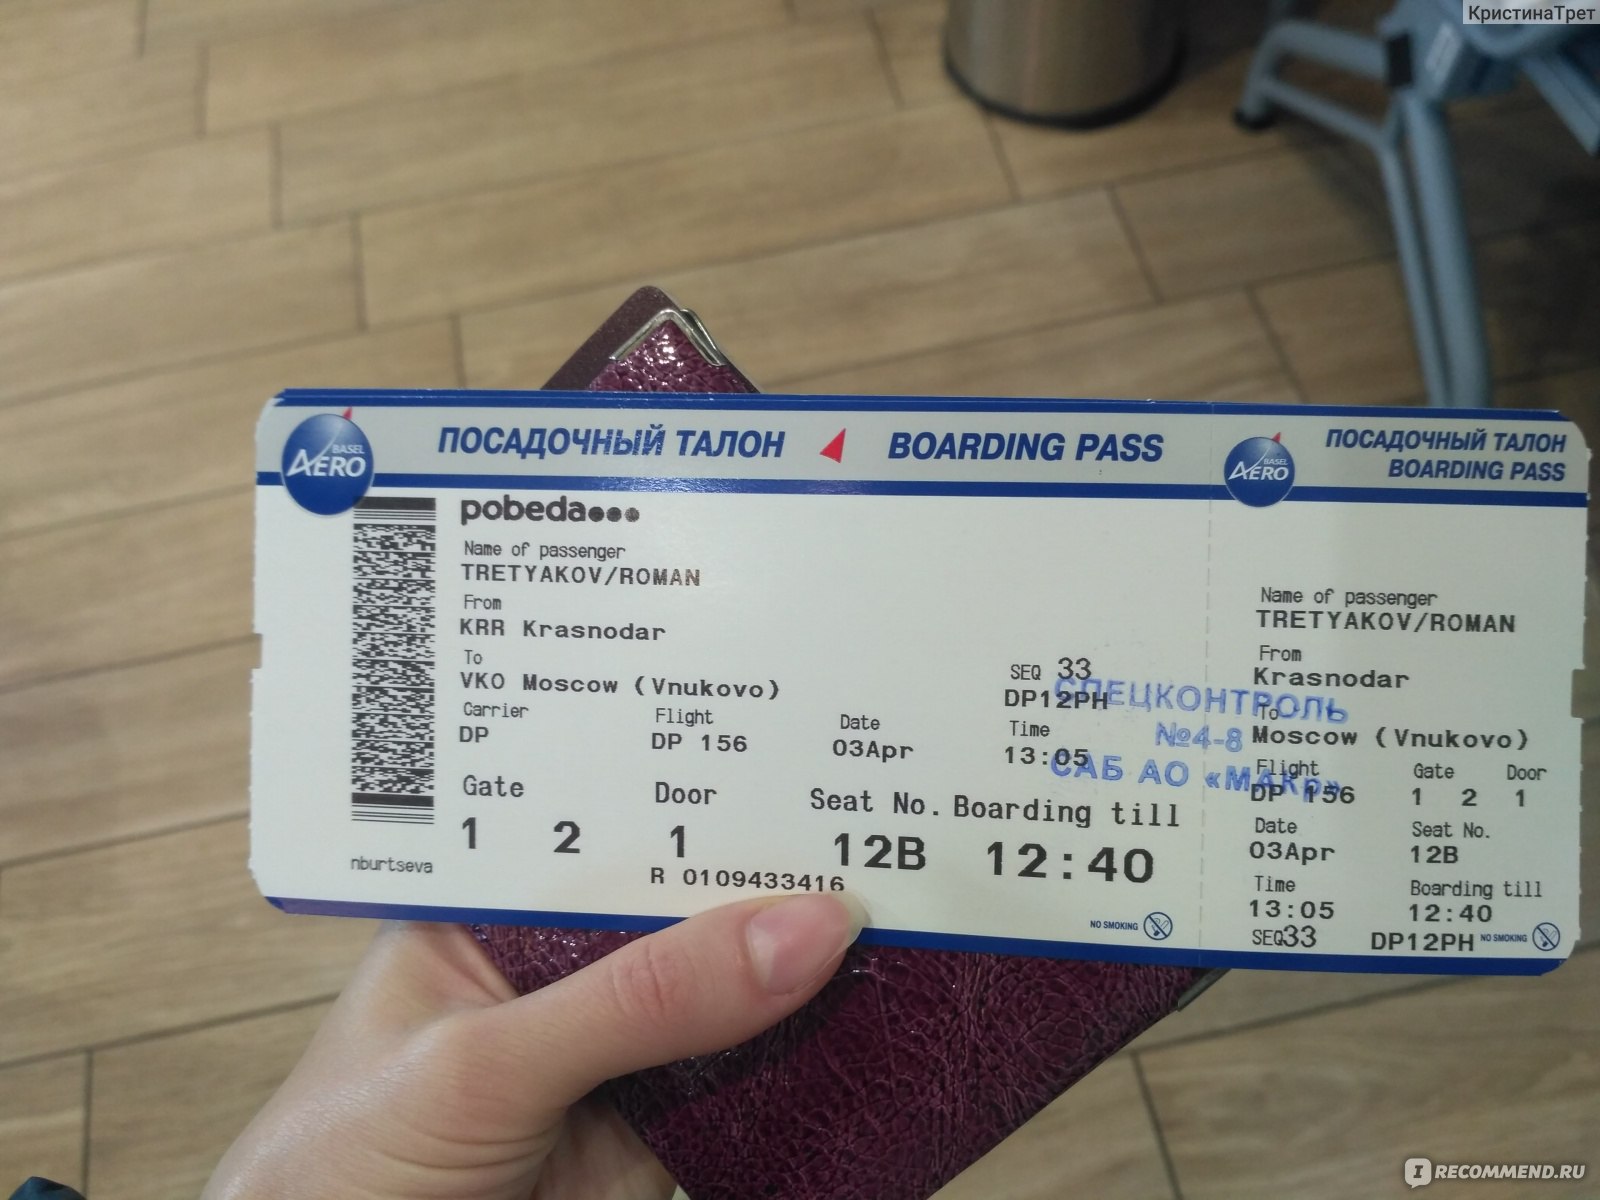 Оренбург пятигорск авиабилеты казань авиабилеты цена прямые рейсы дешево